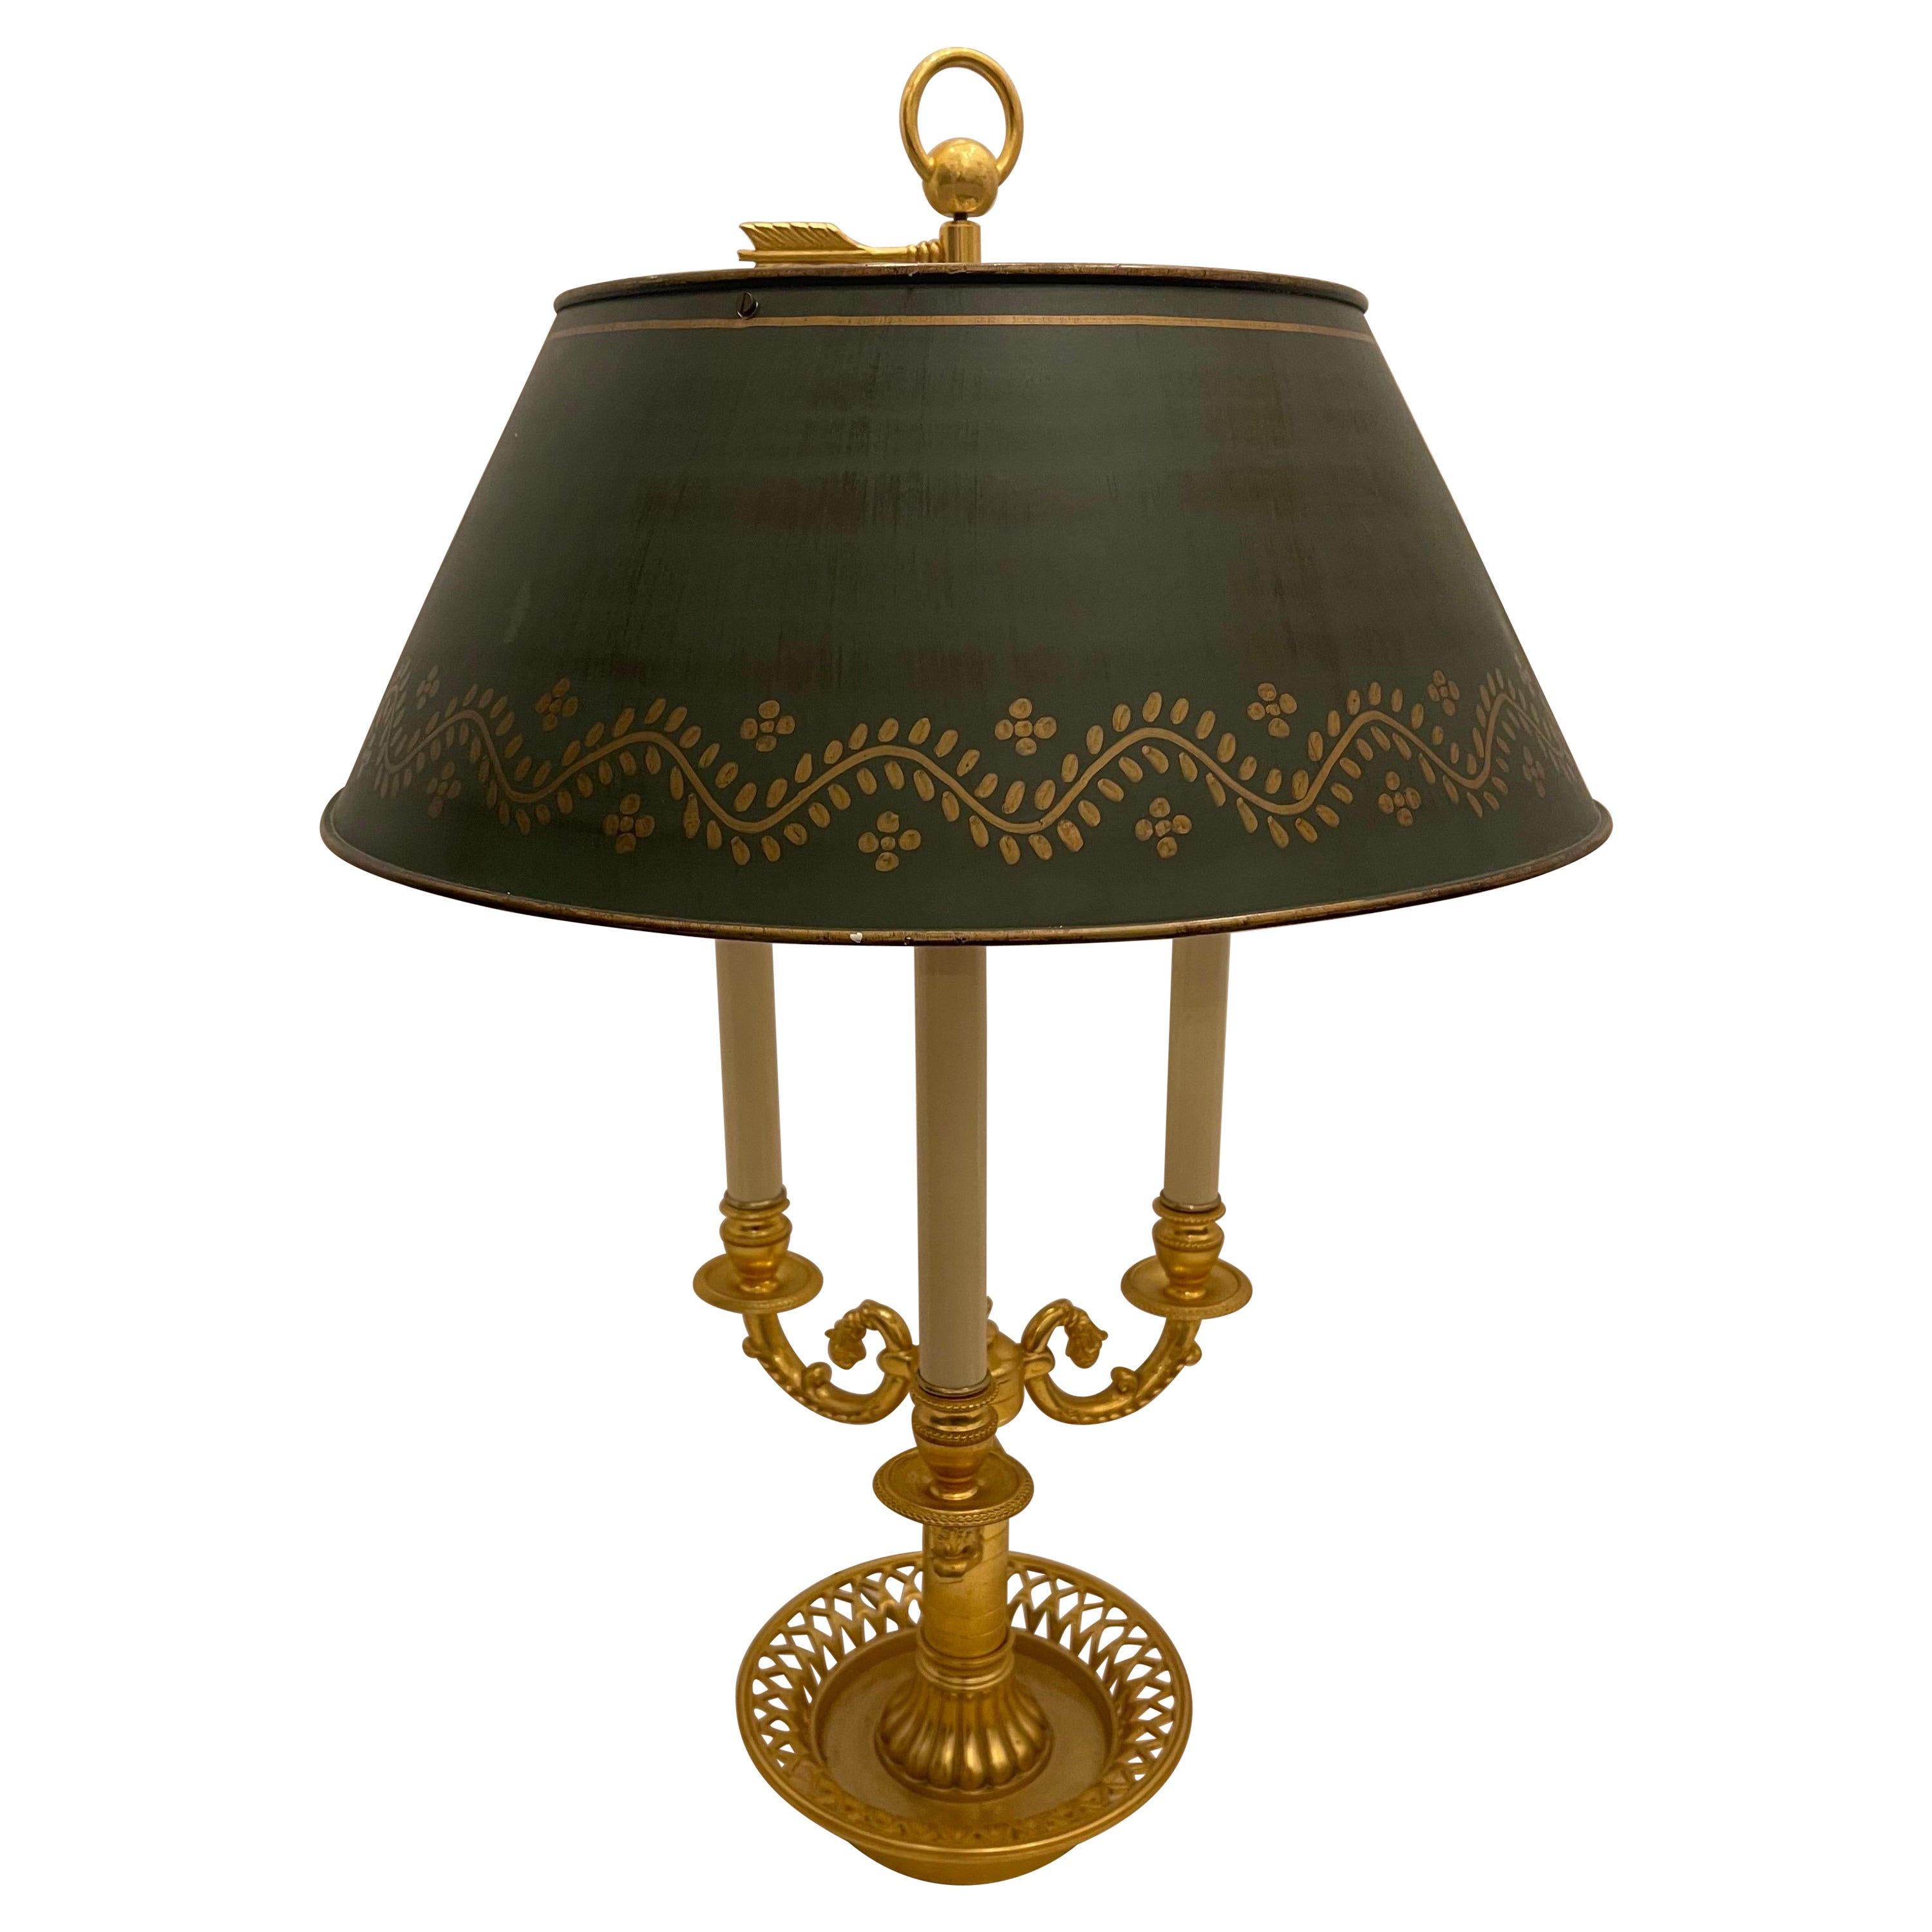 Lampe bouillotte néoclassique française Empire à trois candélabres en bronze avec abat-jour en tôle